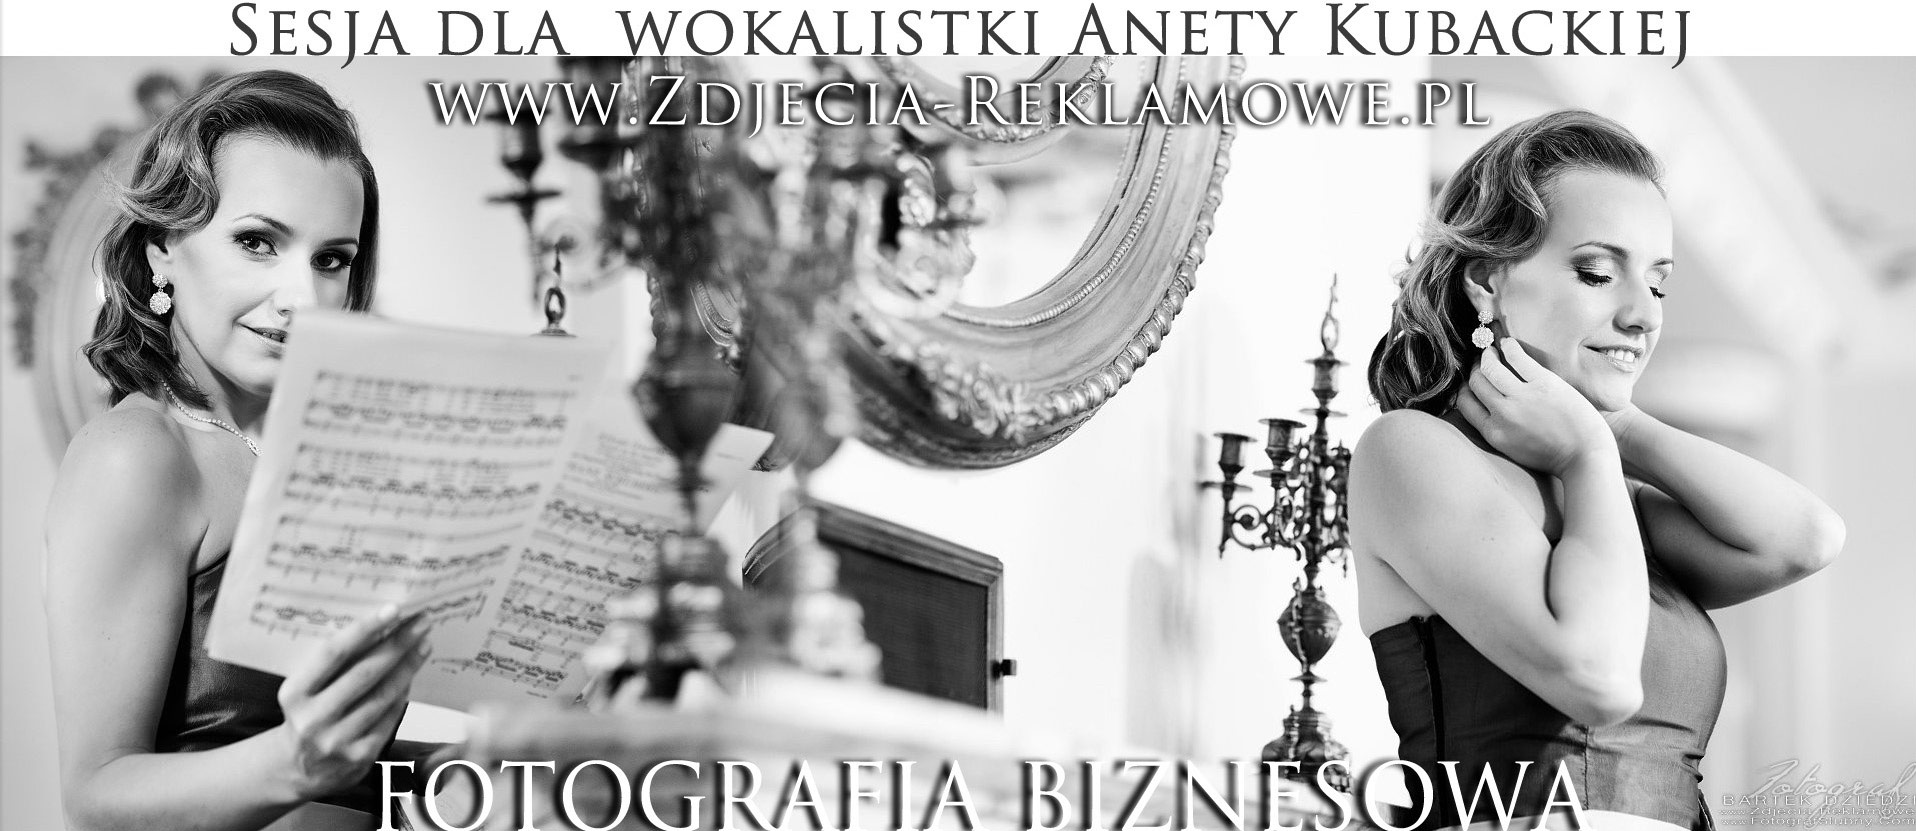 Fotografia biznesowa Kraków. Sesja zdjęciowa dla wokalistki Anety Kubackiej. Sesje zdjęciowe dla firm. Profesjonalny Fotograf